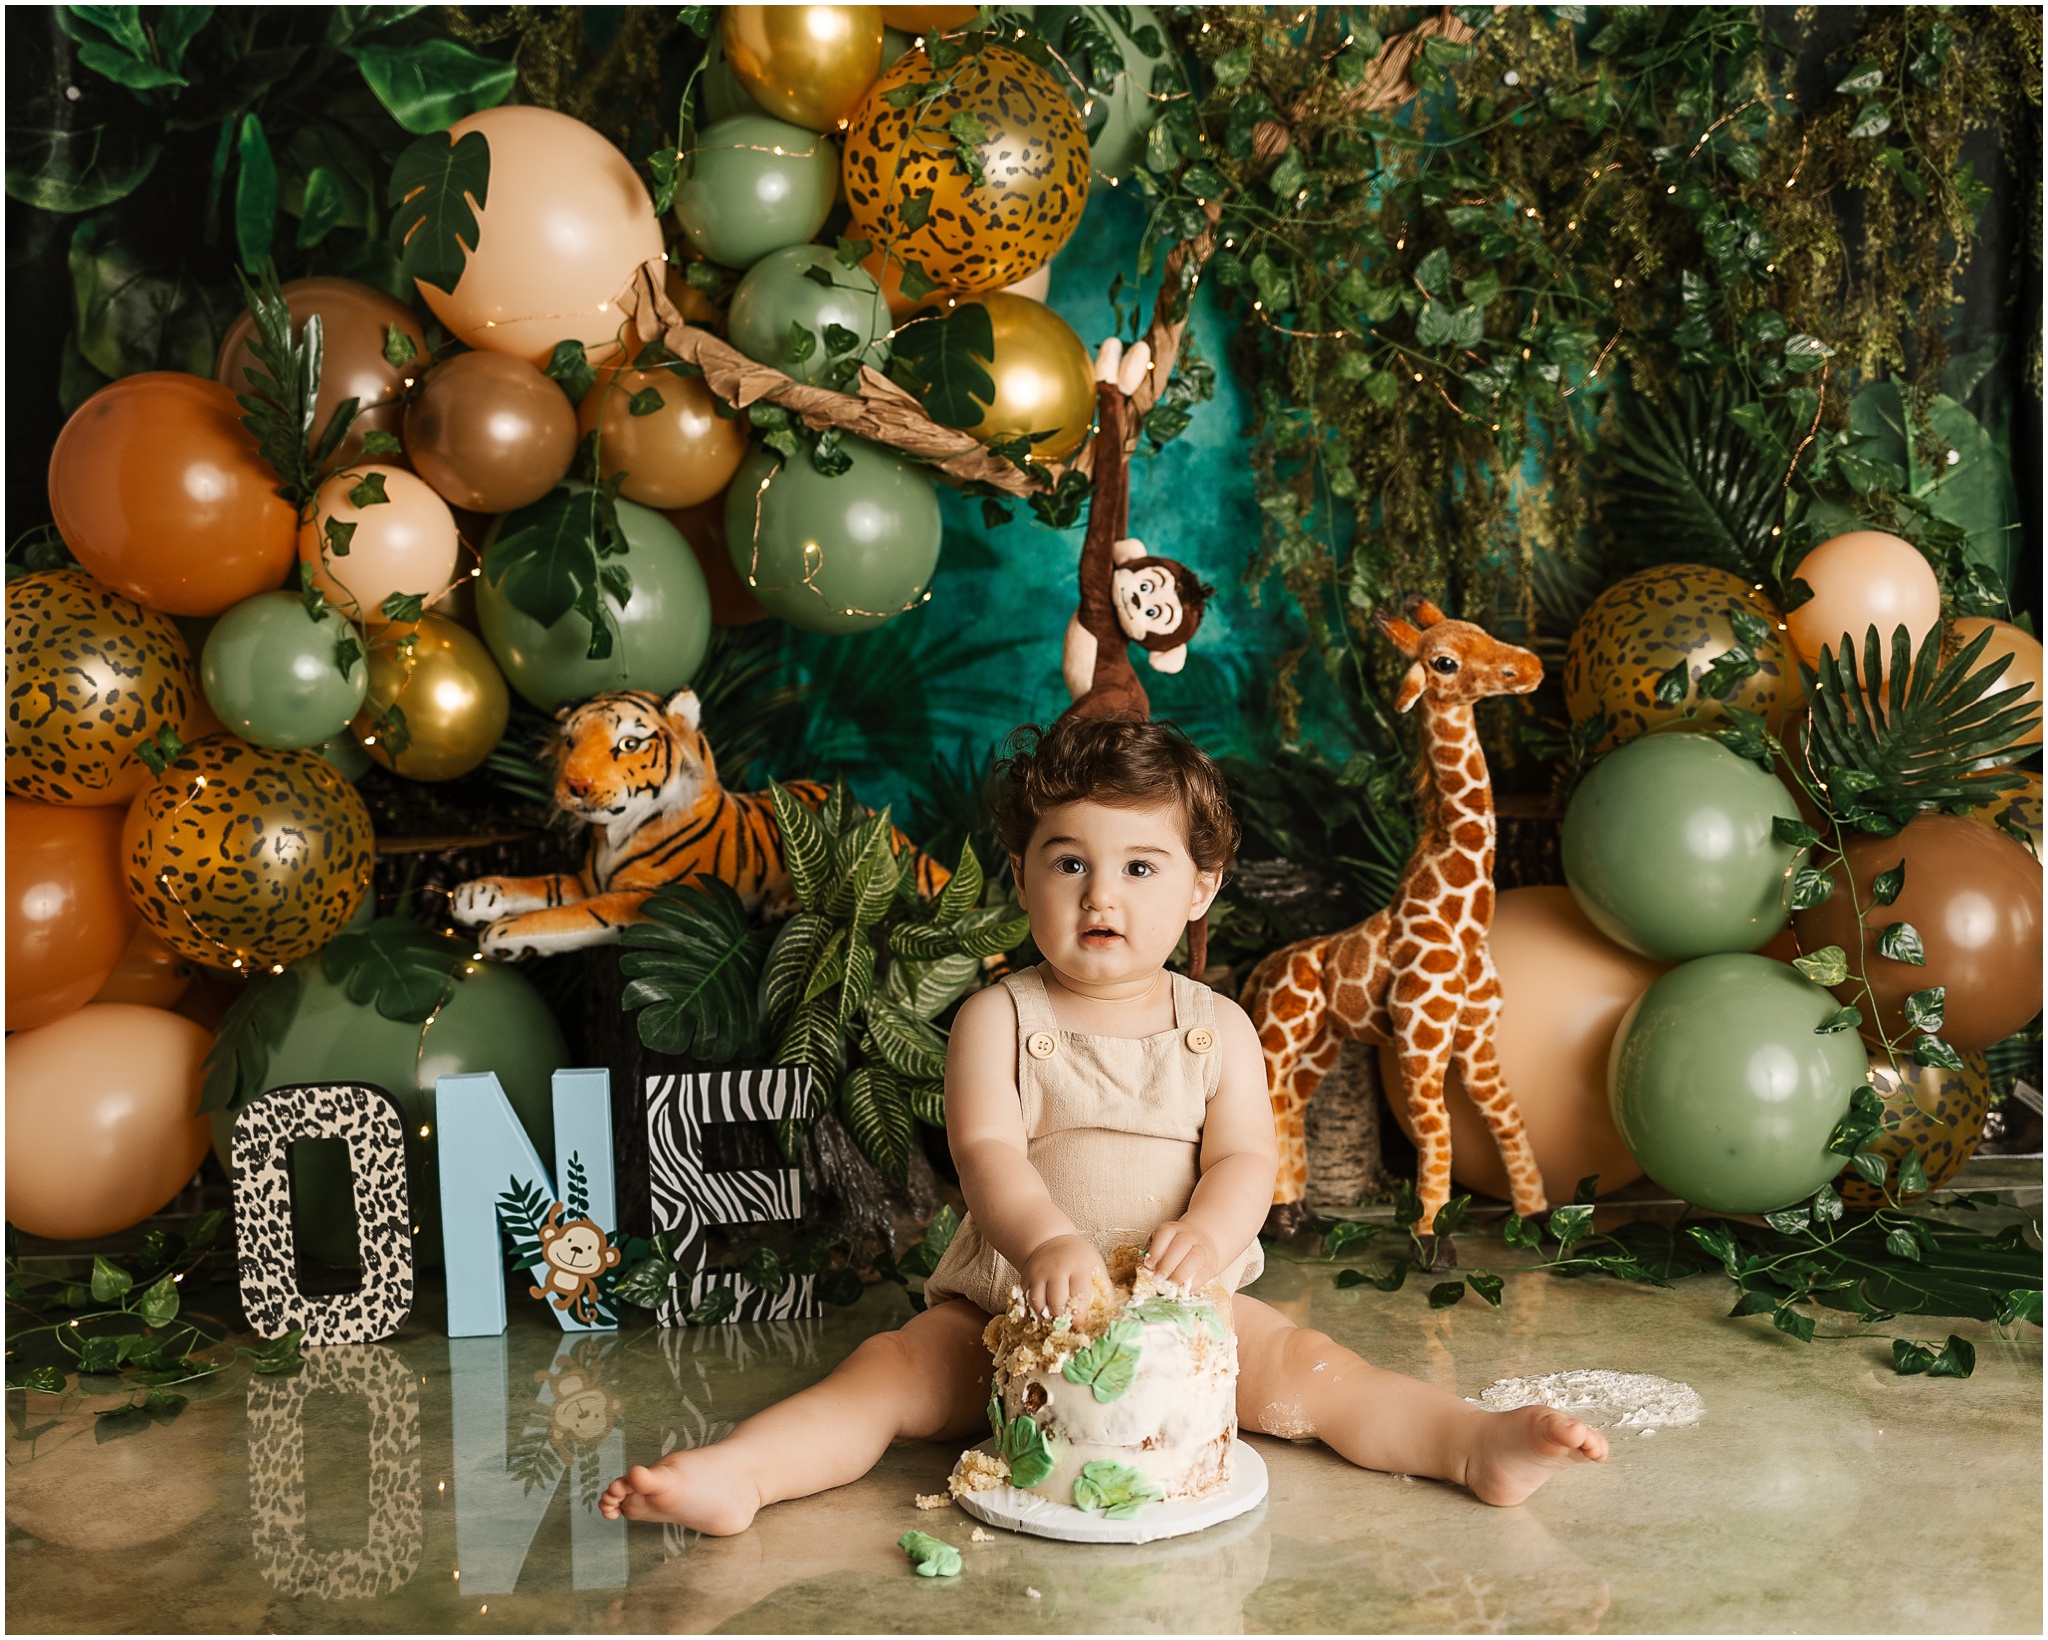 safaricake... - Kushi's Party Decorations,Cake & Hire | Facebook